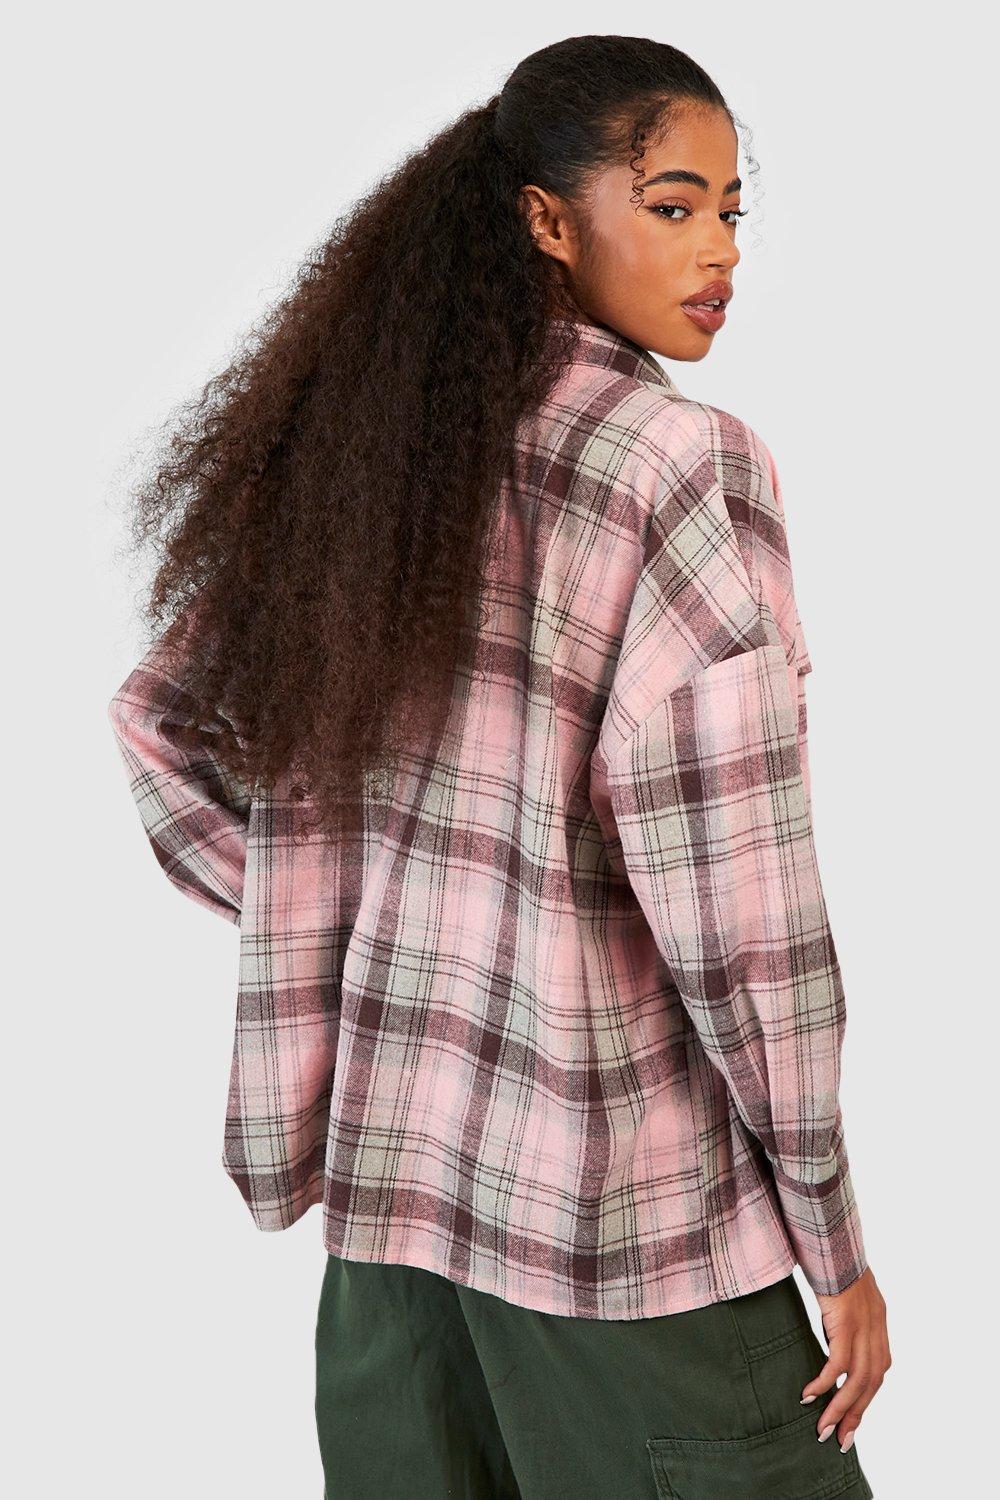 国際ブランド MATSUFUJI Flannel Flannel Check style.2021.7.3